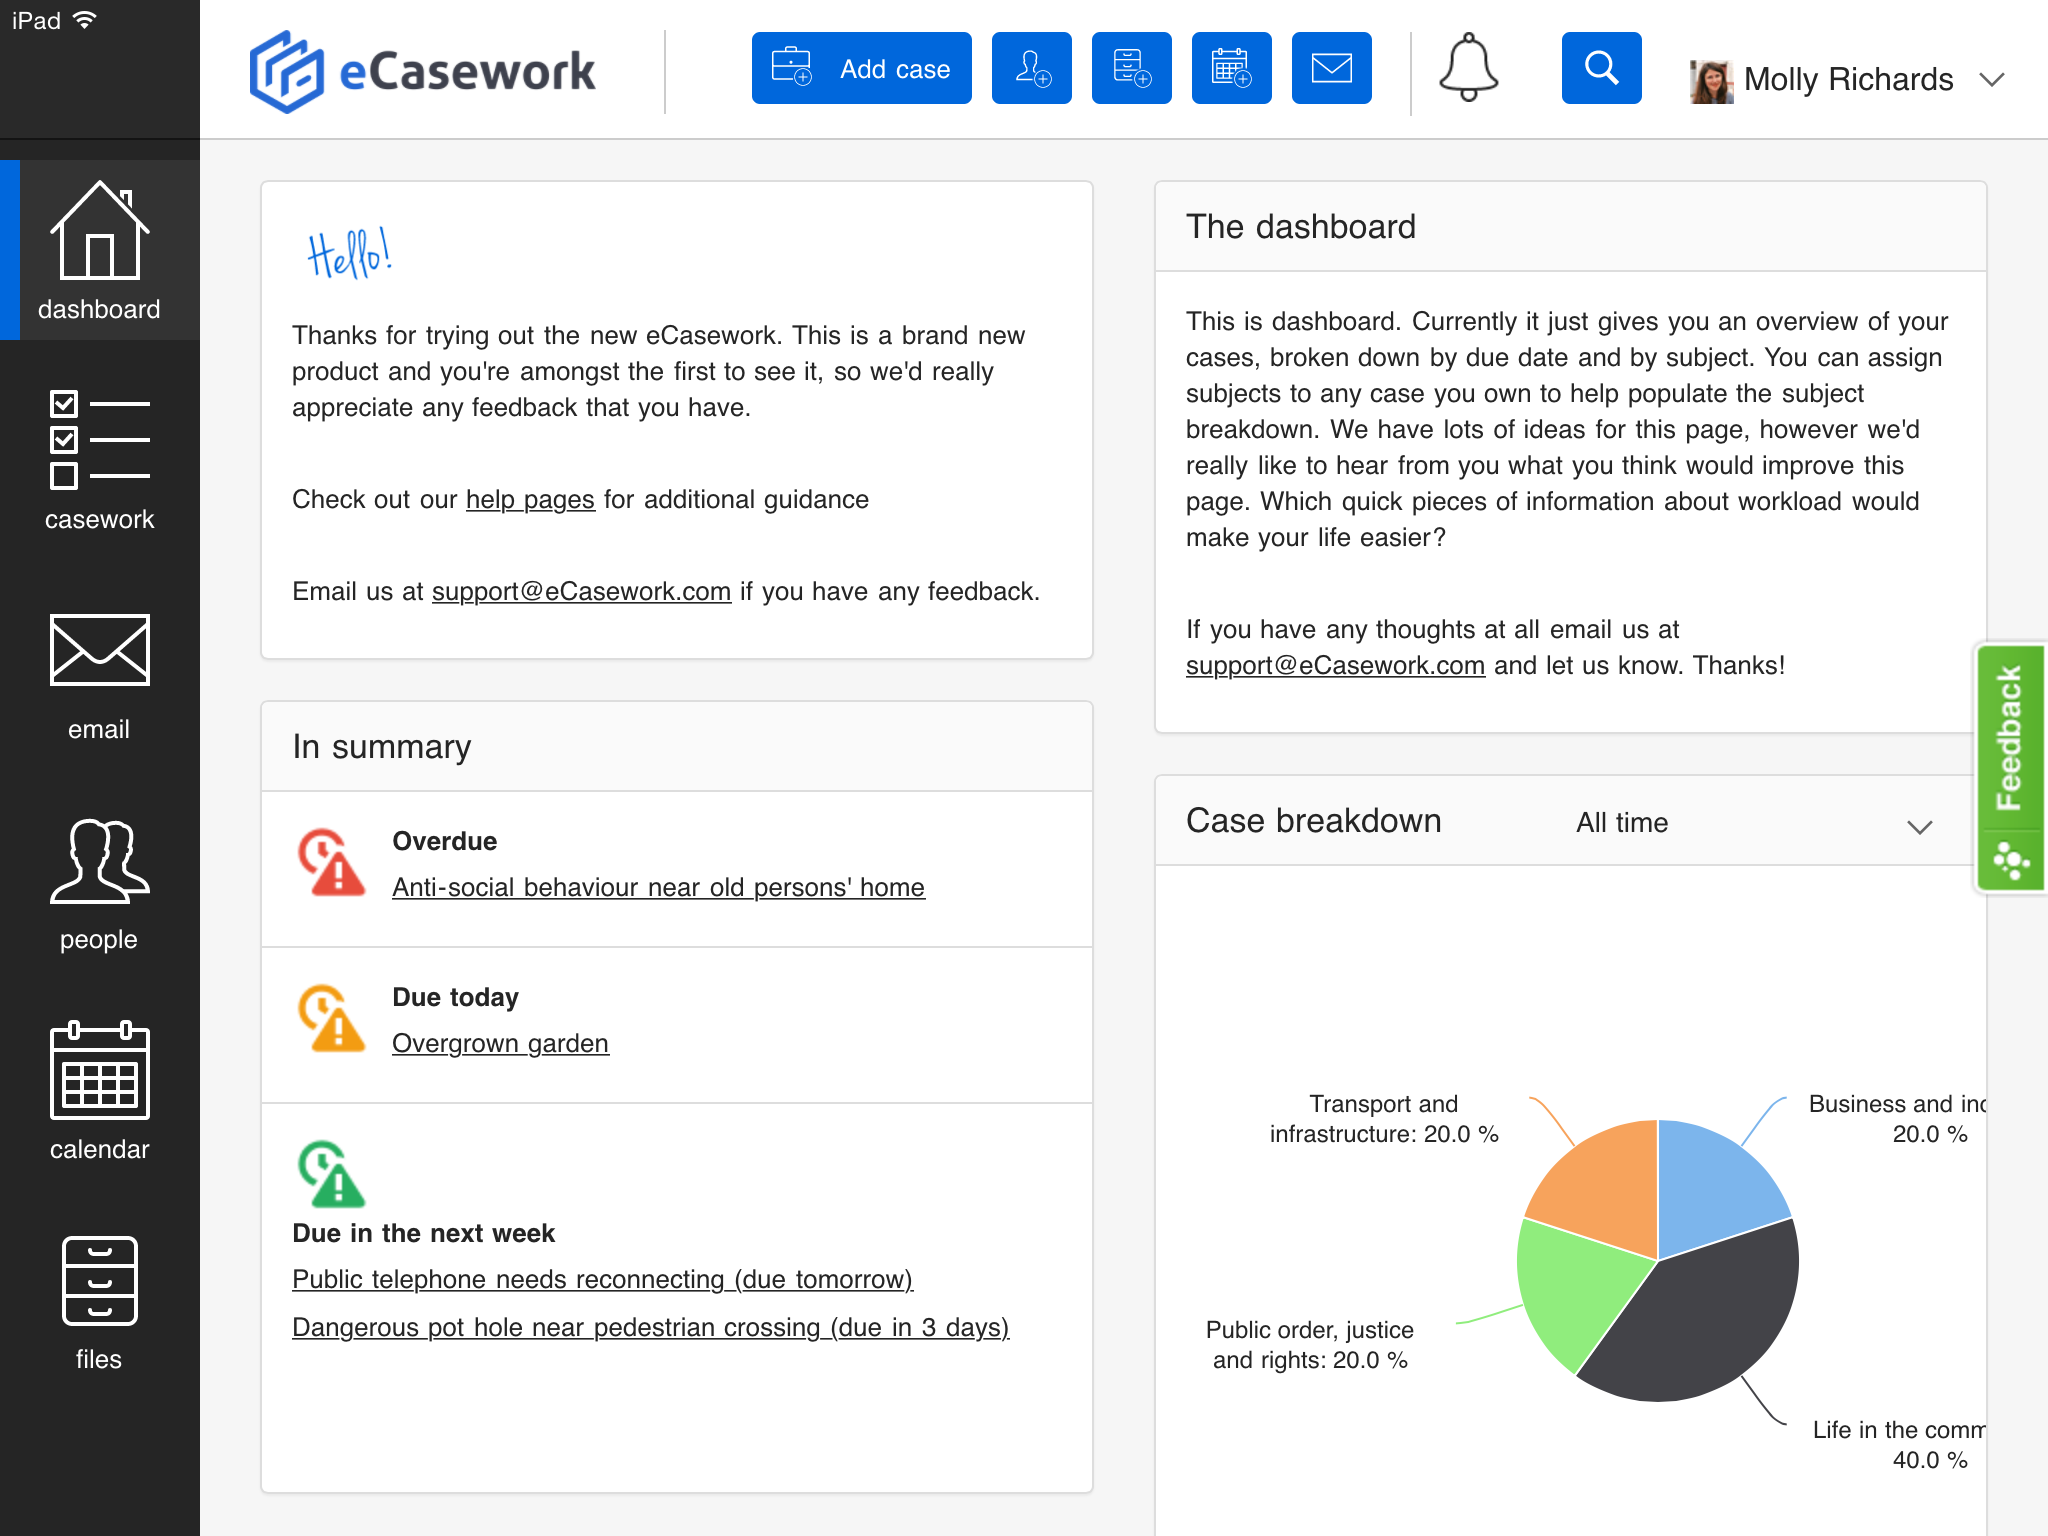 A screenshot of the eCasework dashboard